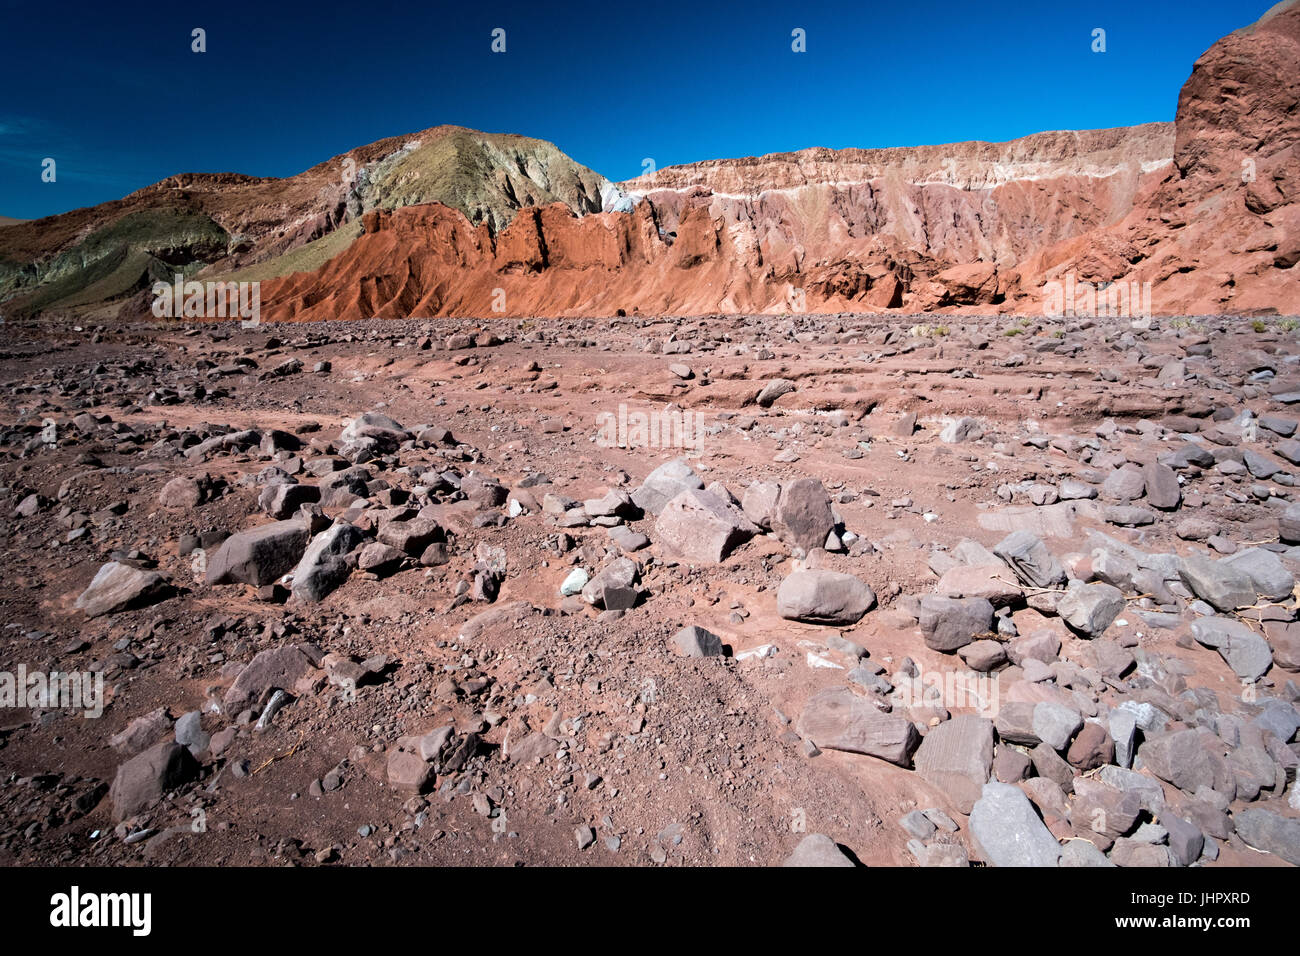 Rainbow Valley dans le désert d'Atacama au Chili. Les roches riches en minéraux des montagnes Domeyko donner le la vallée de couleurs variées allant du rouge au vert. Banque D'Images